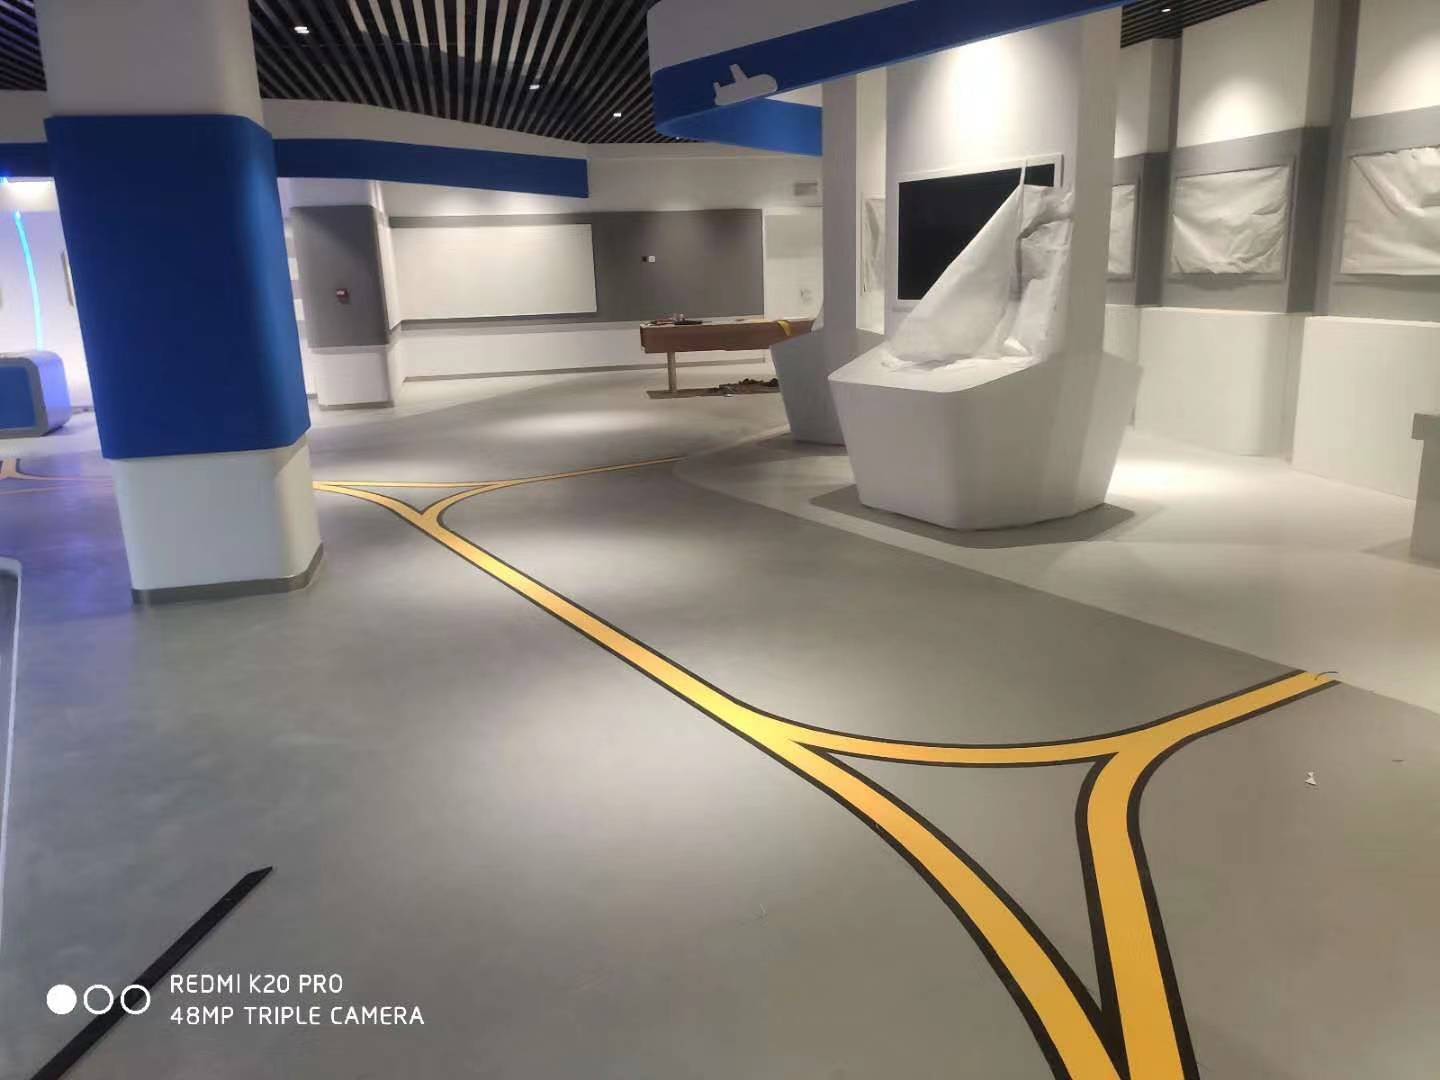 pvc塑胶地板材料在展厅地面的应用方案